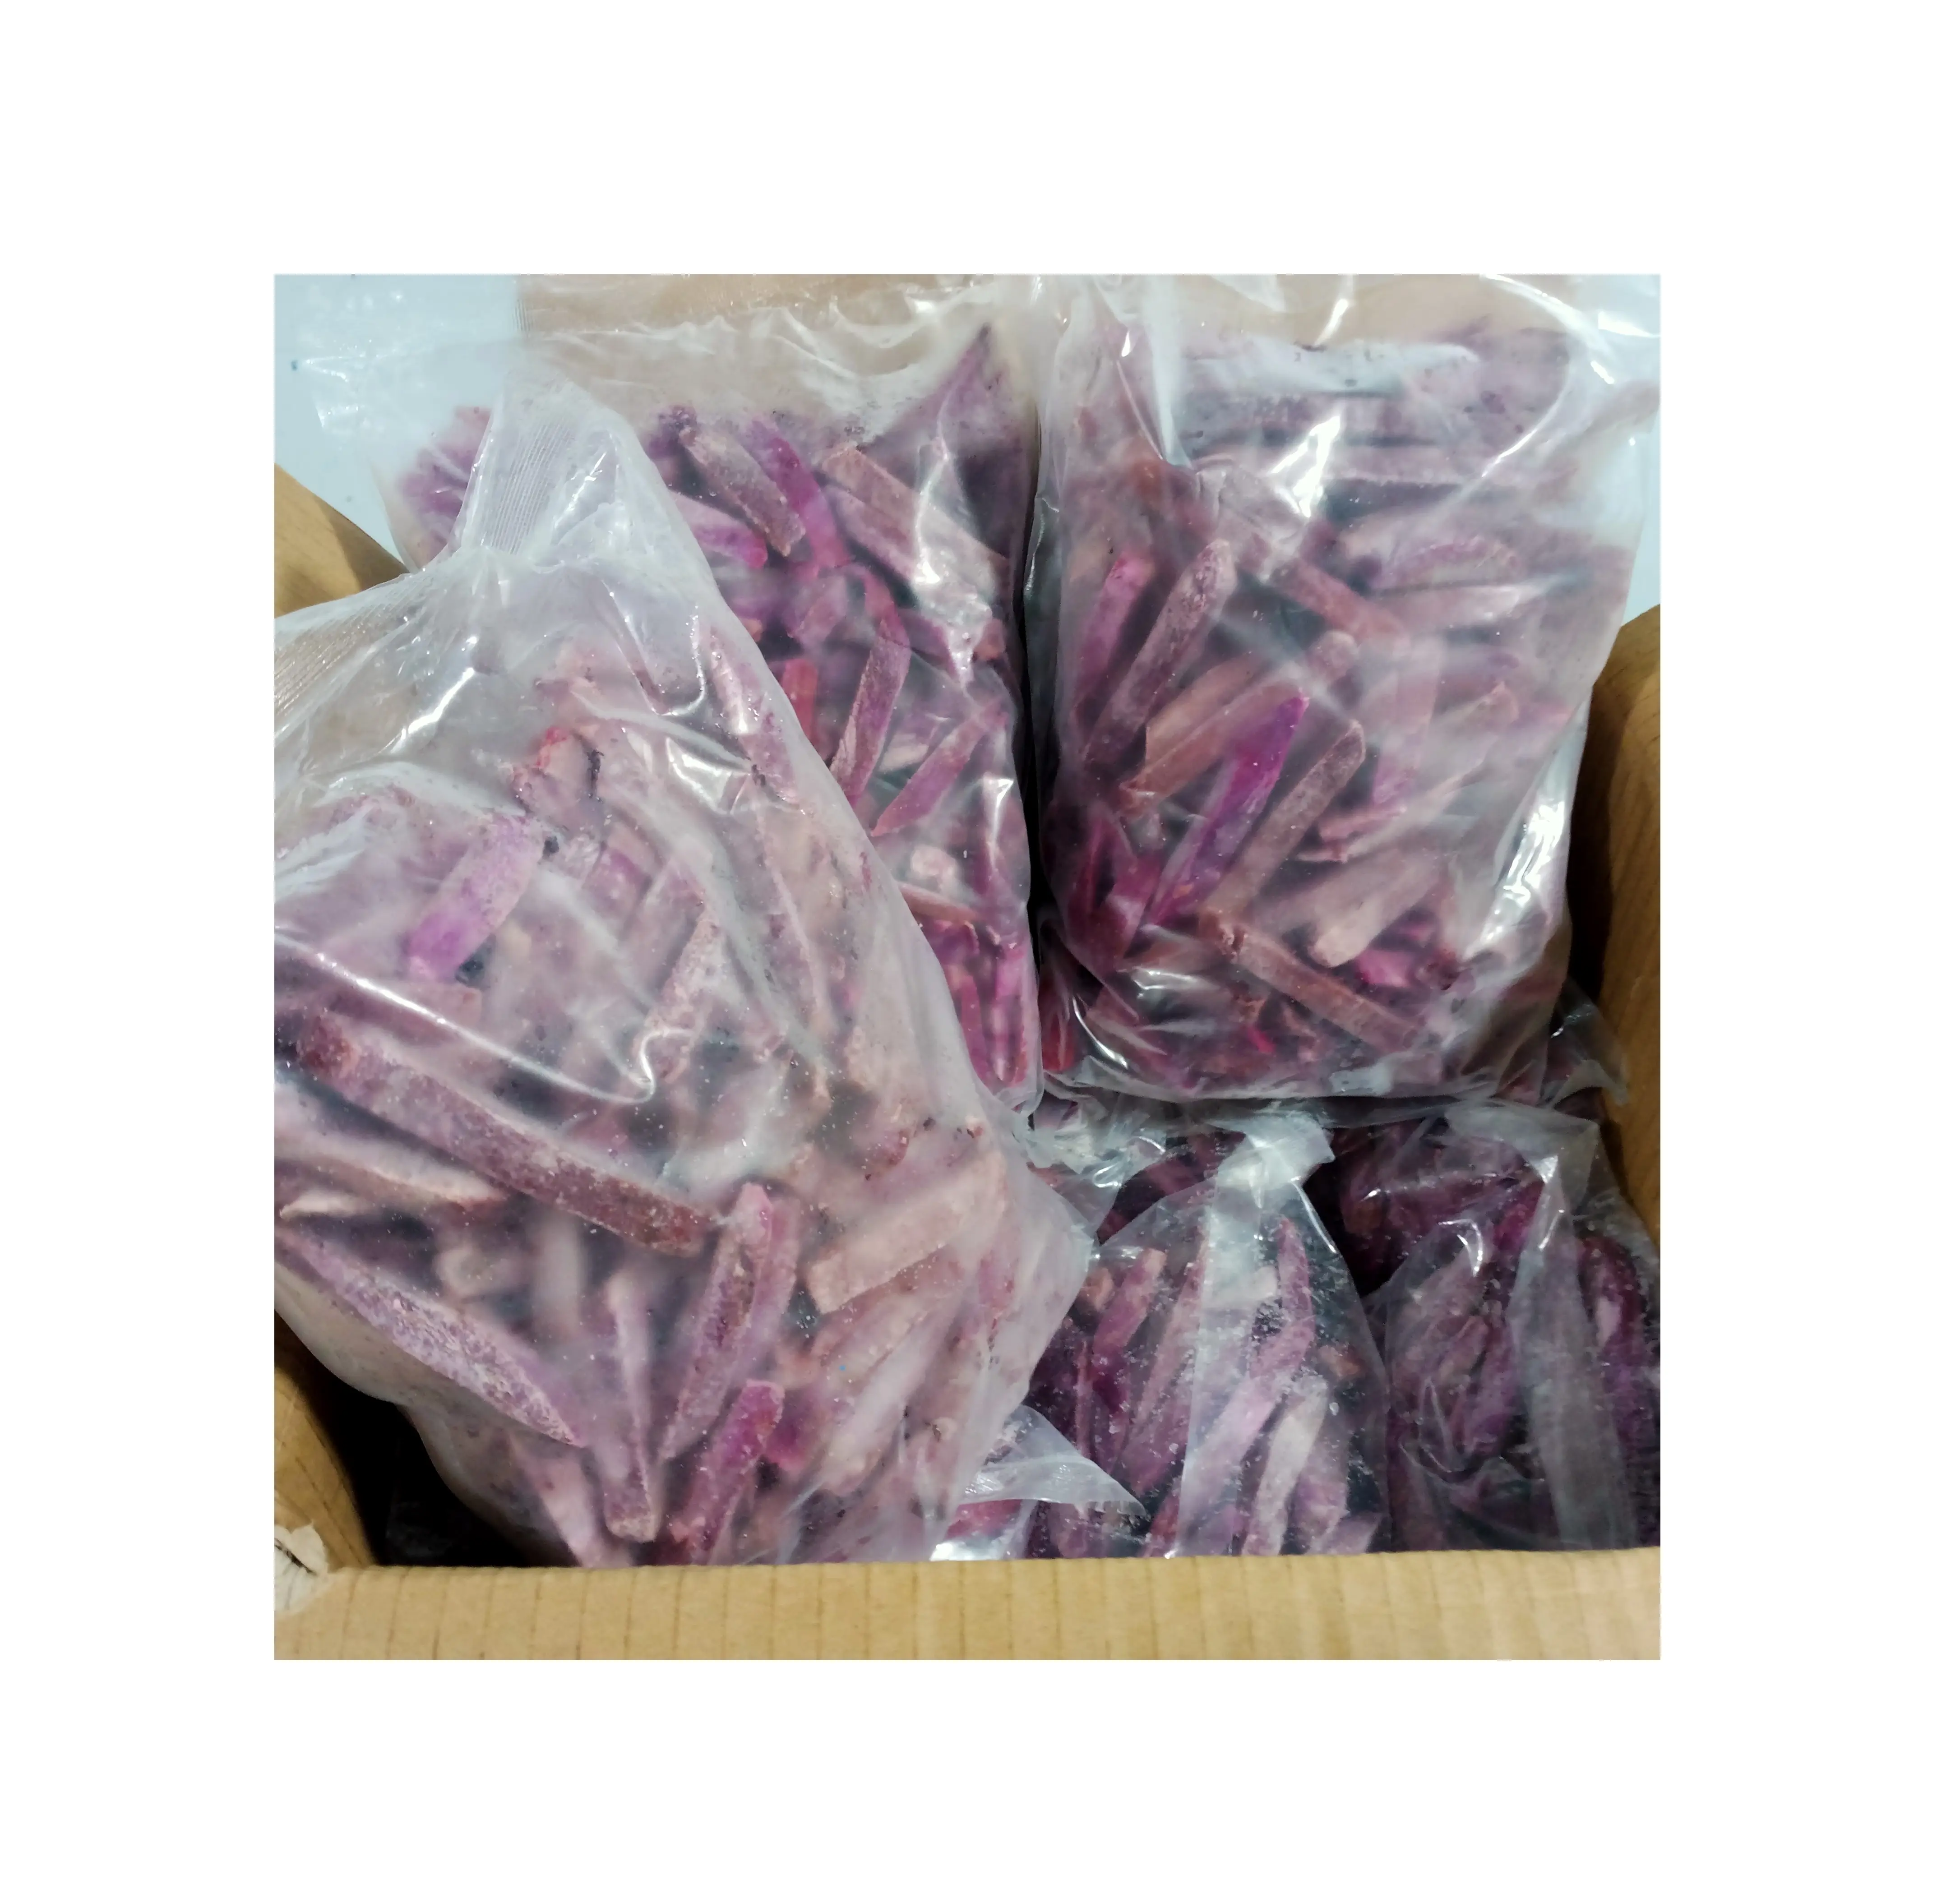 BESTERSELLEND Fabrik gefrorene gebratene süßkartoffel Stickschnitt  Vietnam landwirtschaftlicher Exporteur SANDY99GDGMAILCOM